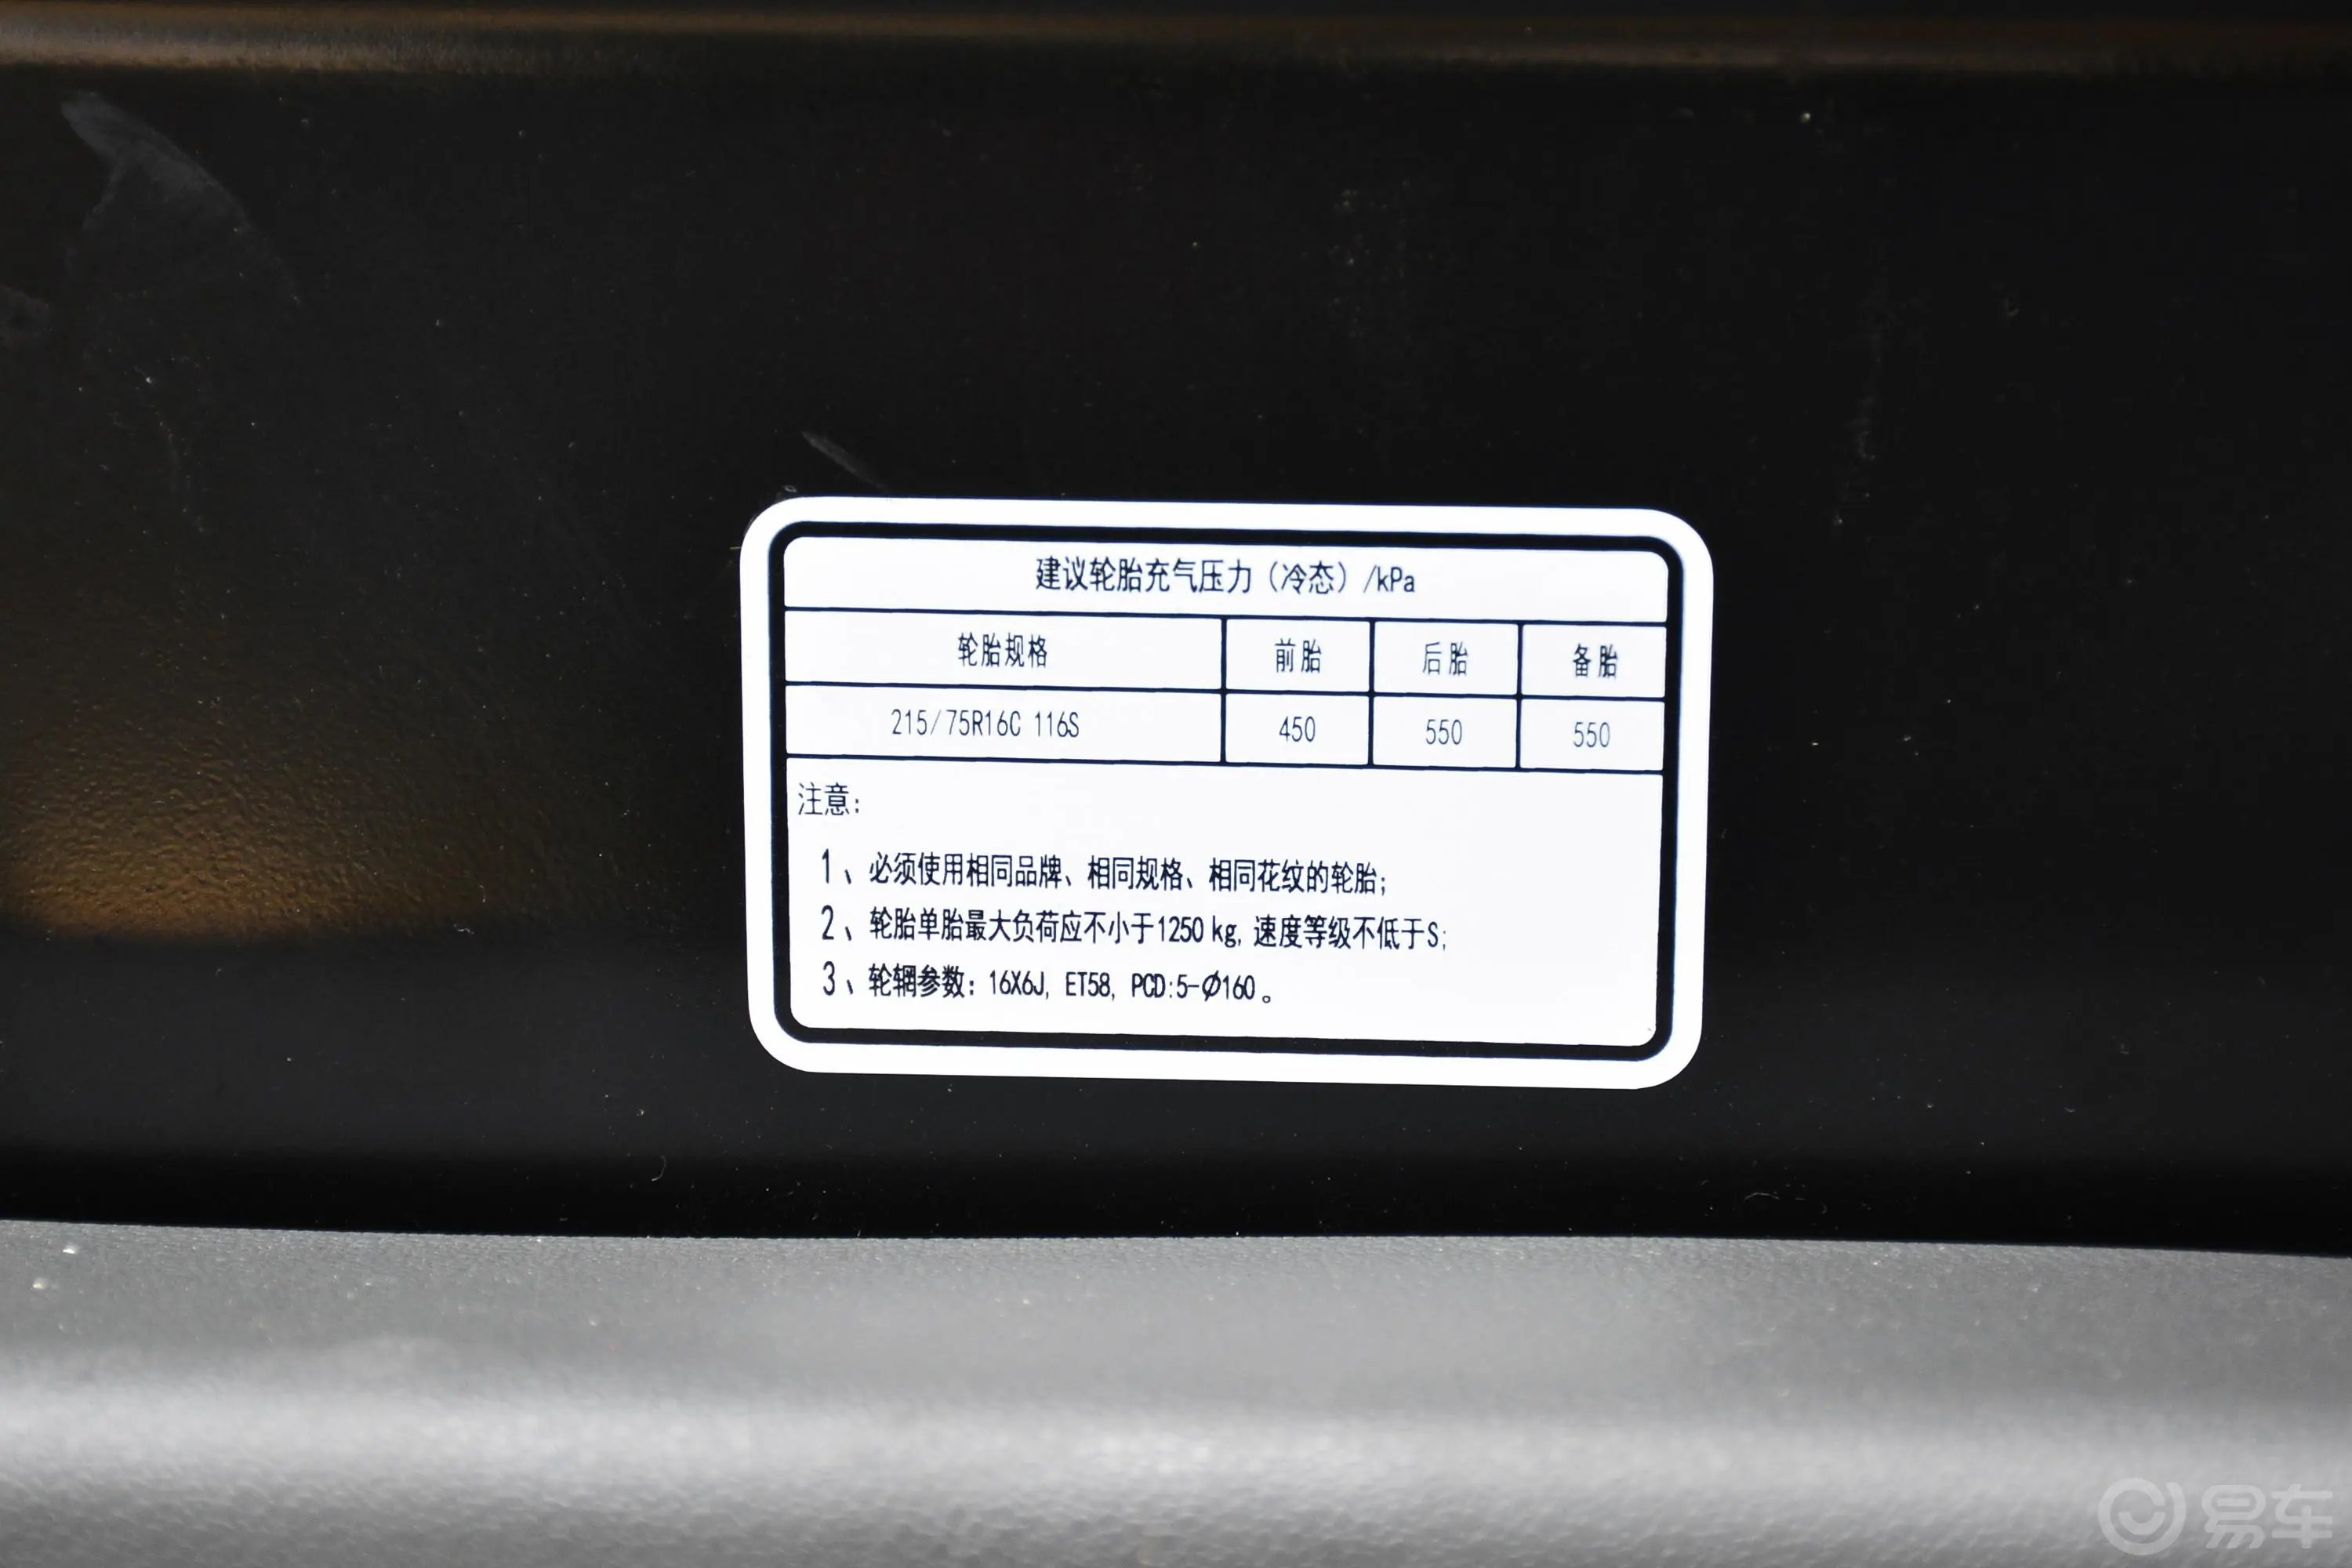 图雅诺商旅版小客 康明斯 2.8T 手动加长轴新高顶高级客车 14座胎压信息铭牌